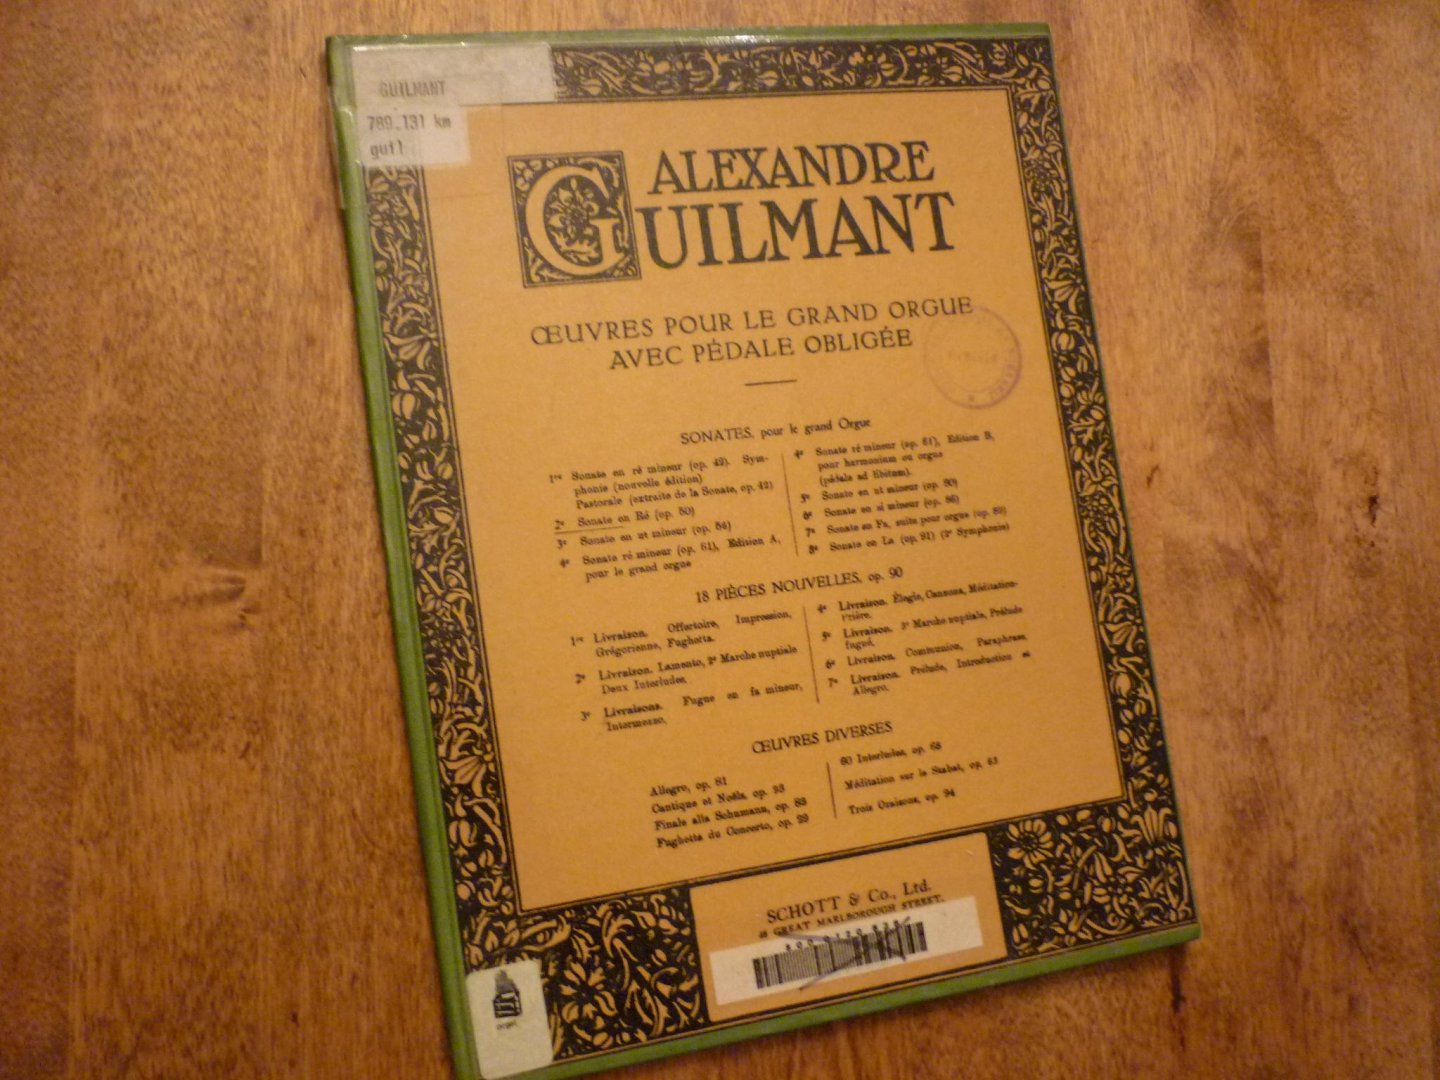 Guilmant; Alexandre - Oevres pour le Grand Orgue; avec pédale obligée / Sonates pour orgue No. 2 en Ré Majeur (Op.50)